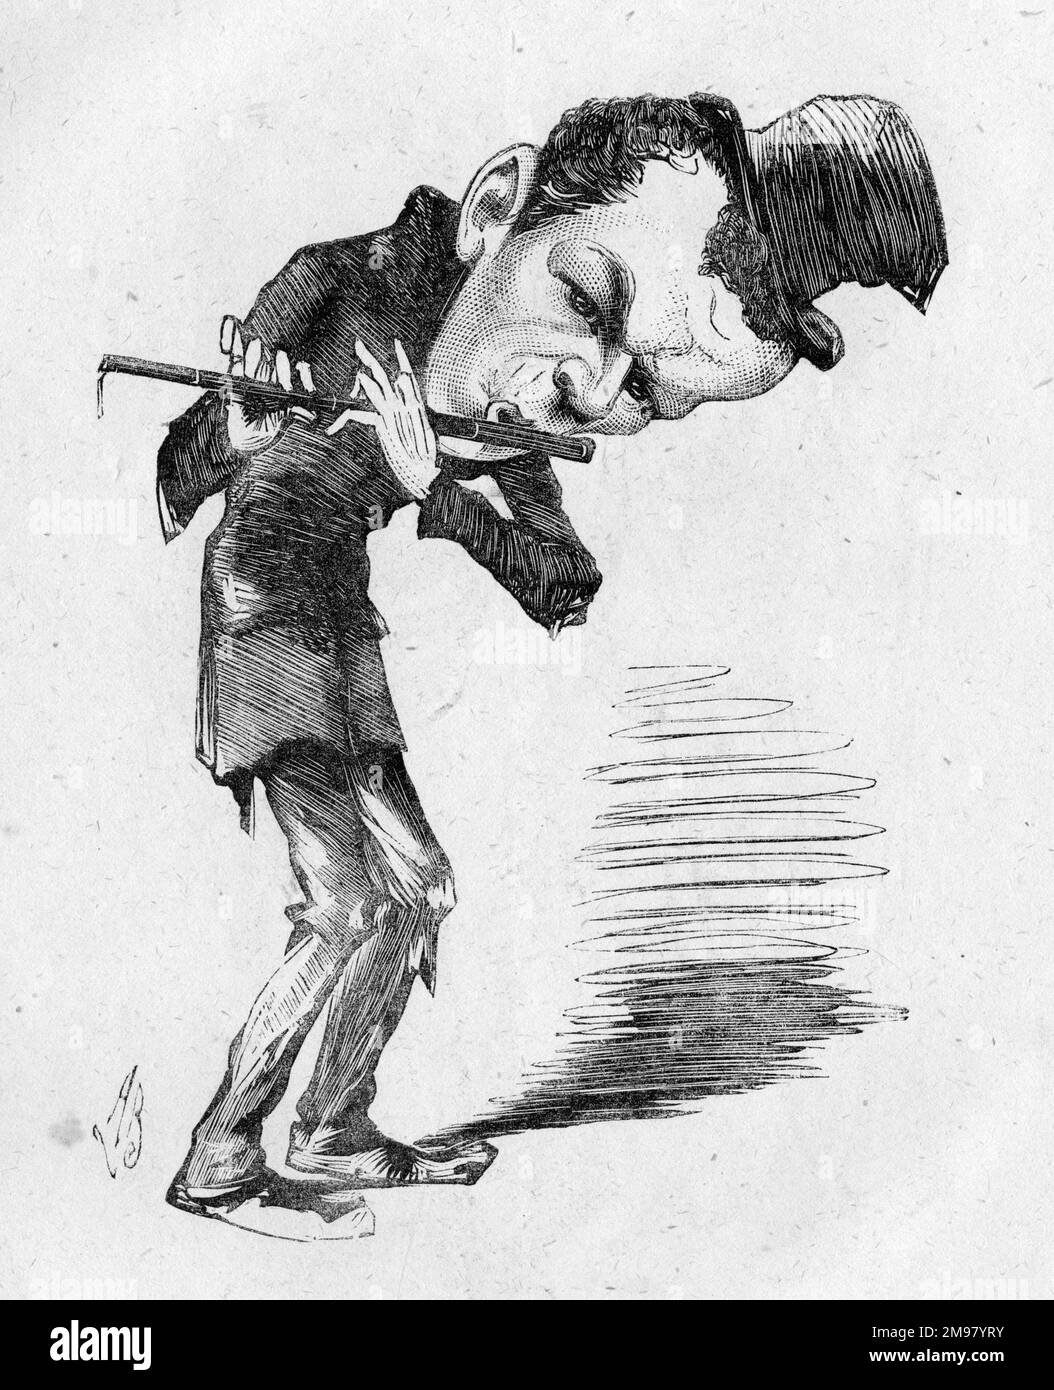 Caricatura del actor y director de teatro inglés Edward O'Connor Terry (1844-1912), visto aquí tocando una flauta. Foto de stock